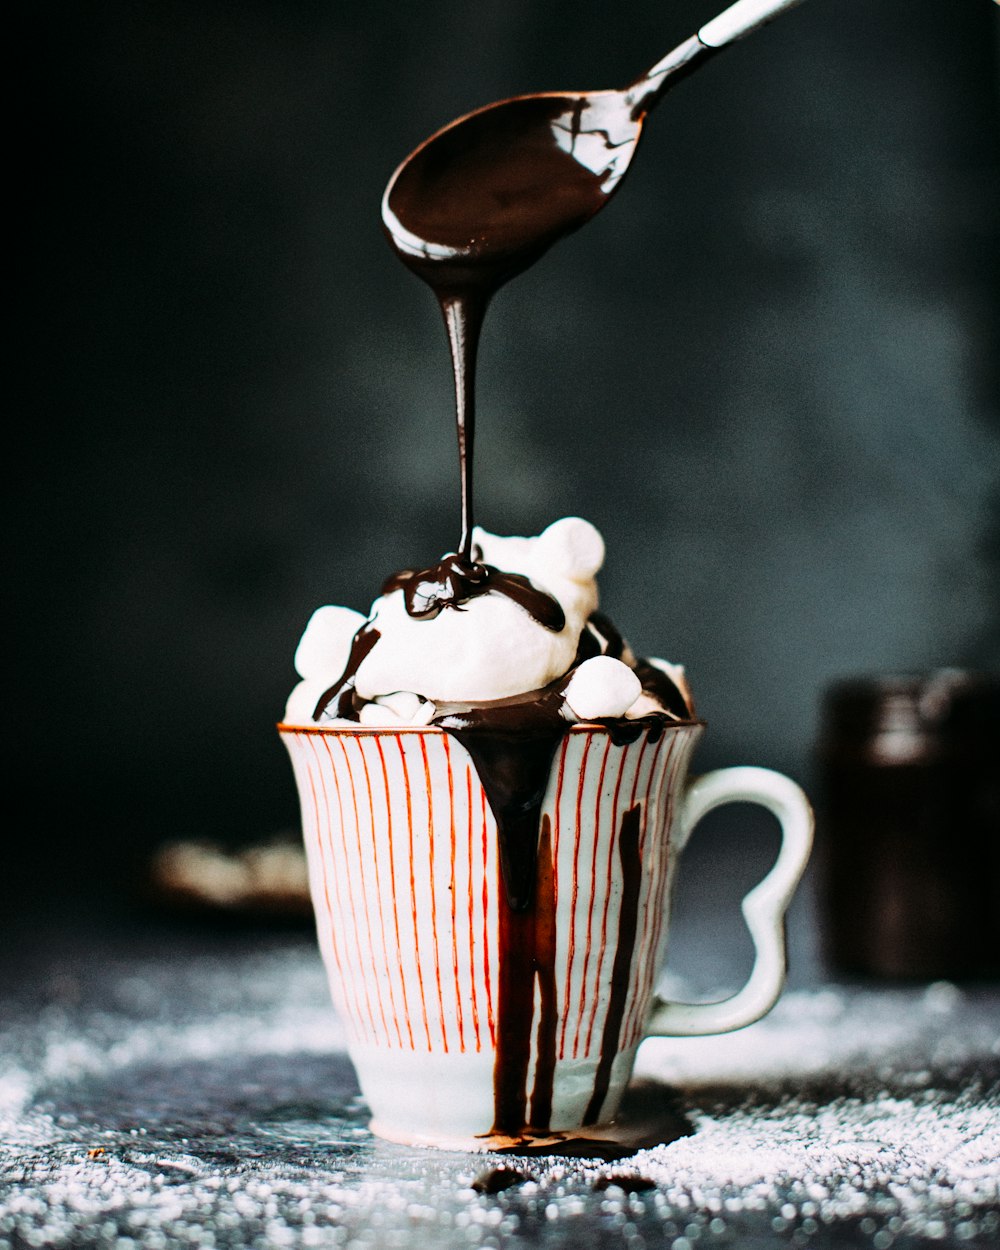 세라믹 컵에 바닐라 아이스크림에 초콜릿을 붓는 모습